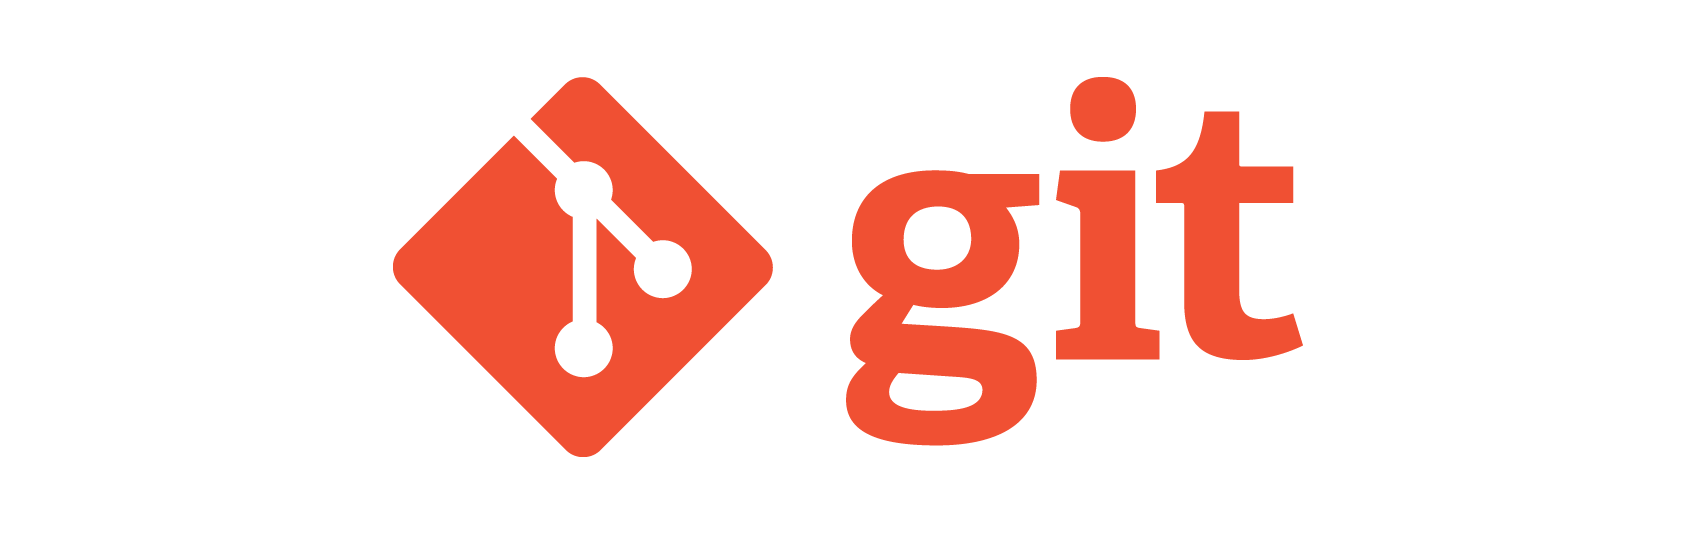 Уязвимость в Git: выполнение произвольных команд - 1